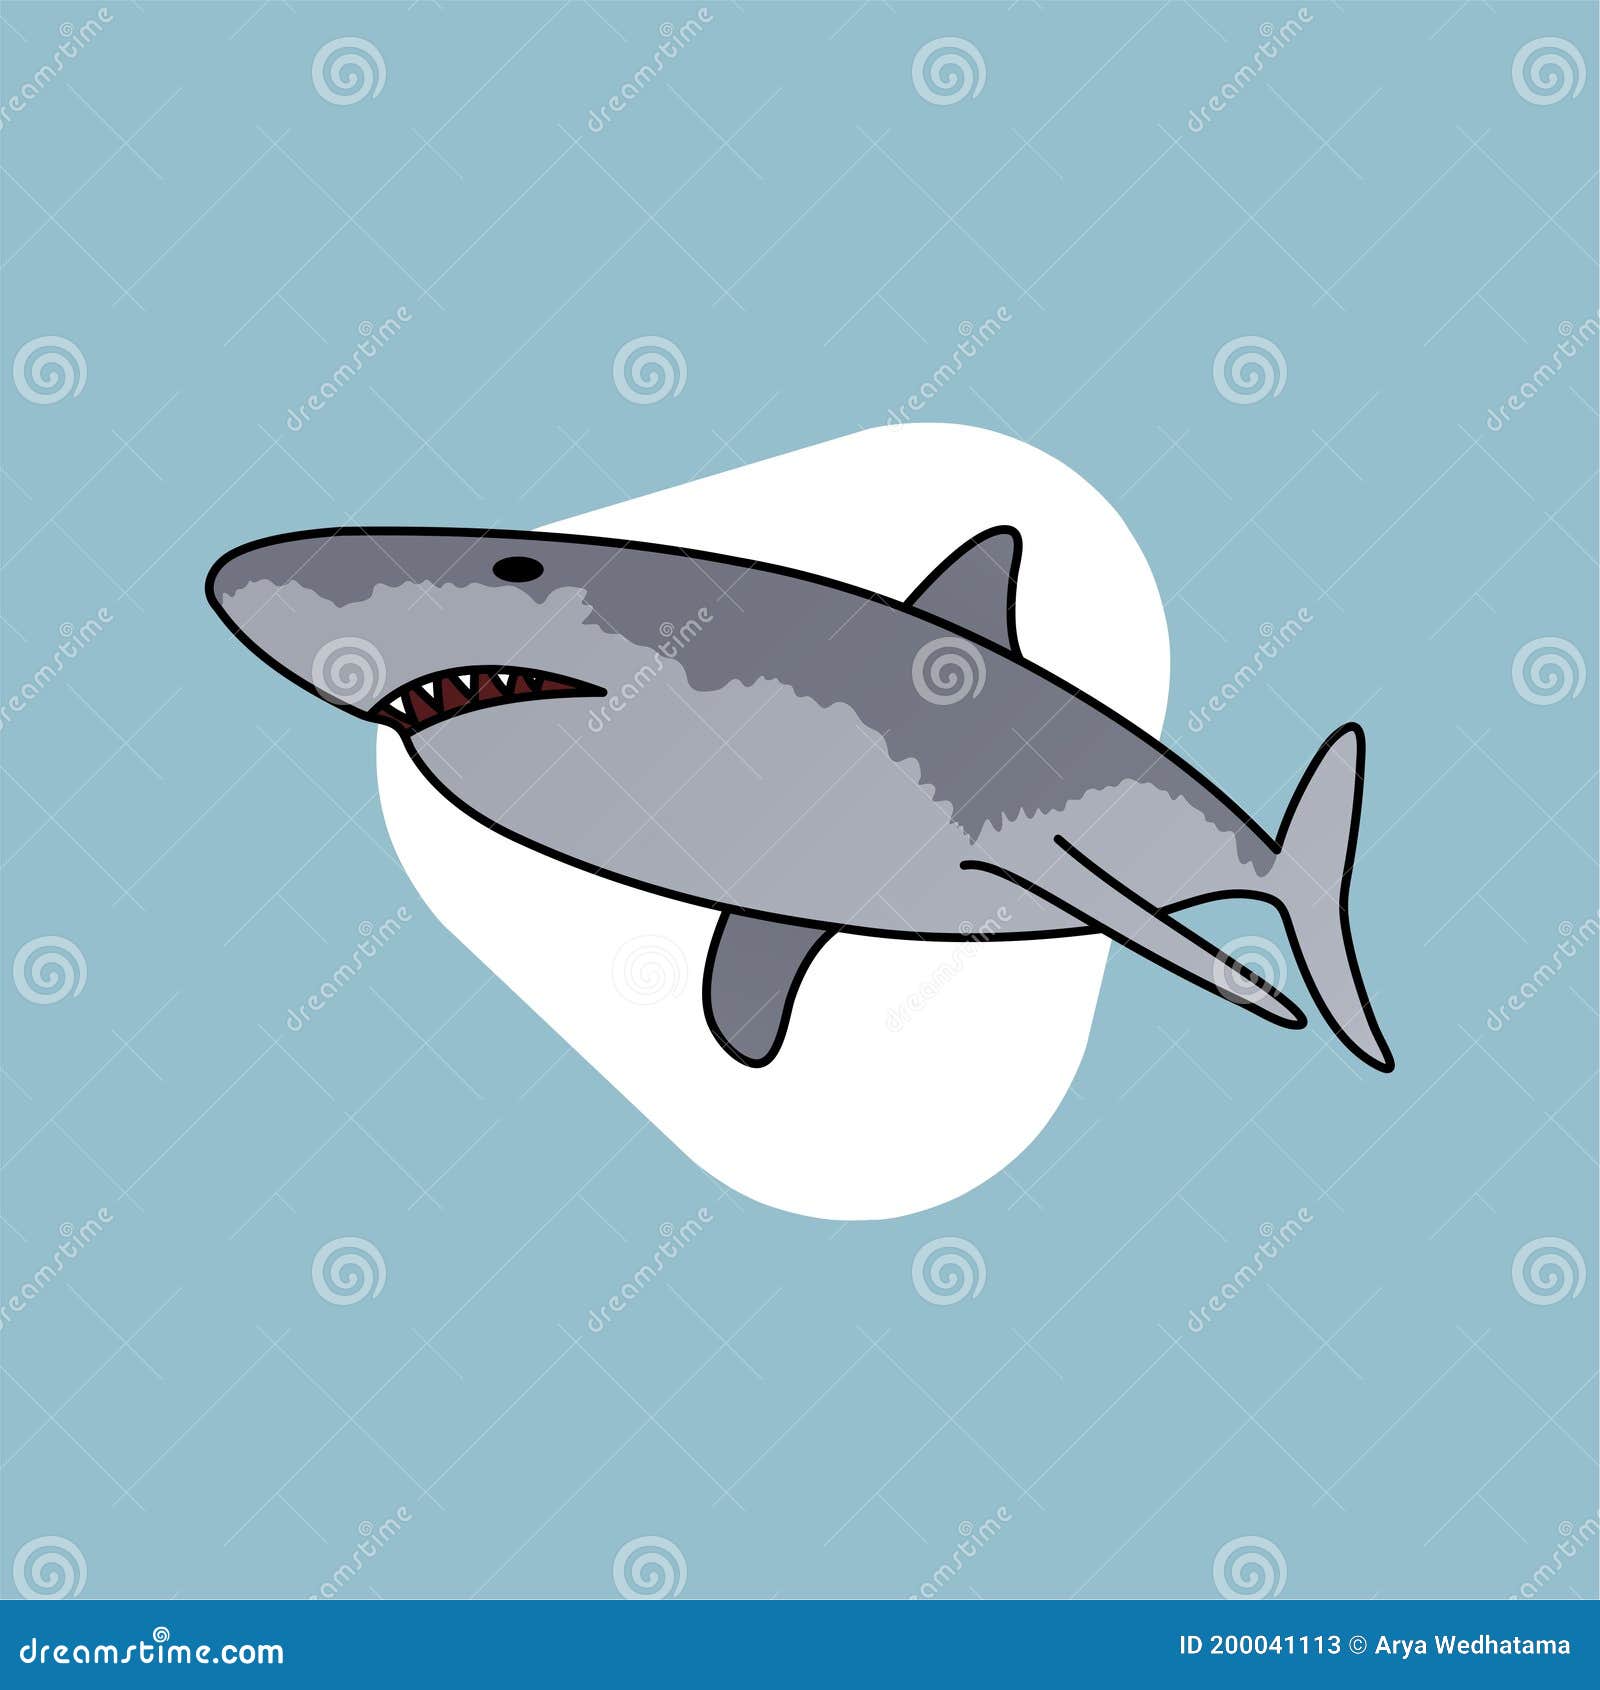 Ilustración De Dibujos Animados De Tiburones Salvajes, Carácter Gracioso,  Diseño Plano Stock de ilustración - Ilustración de comida, aleta: 200041113